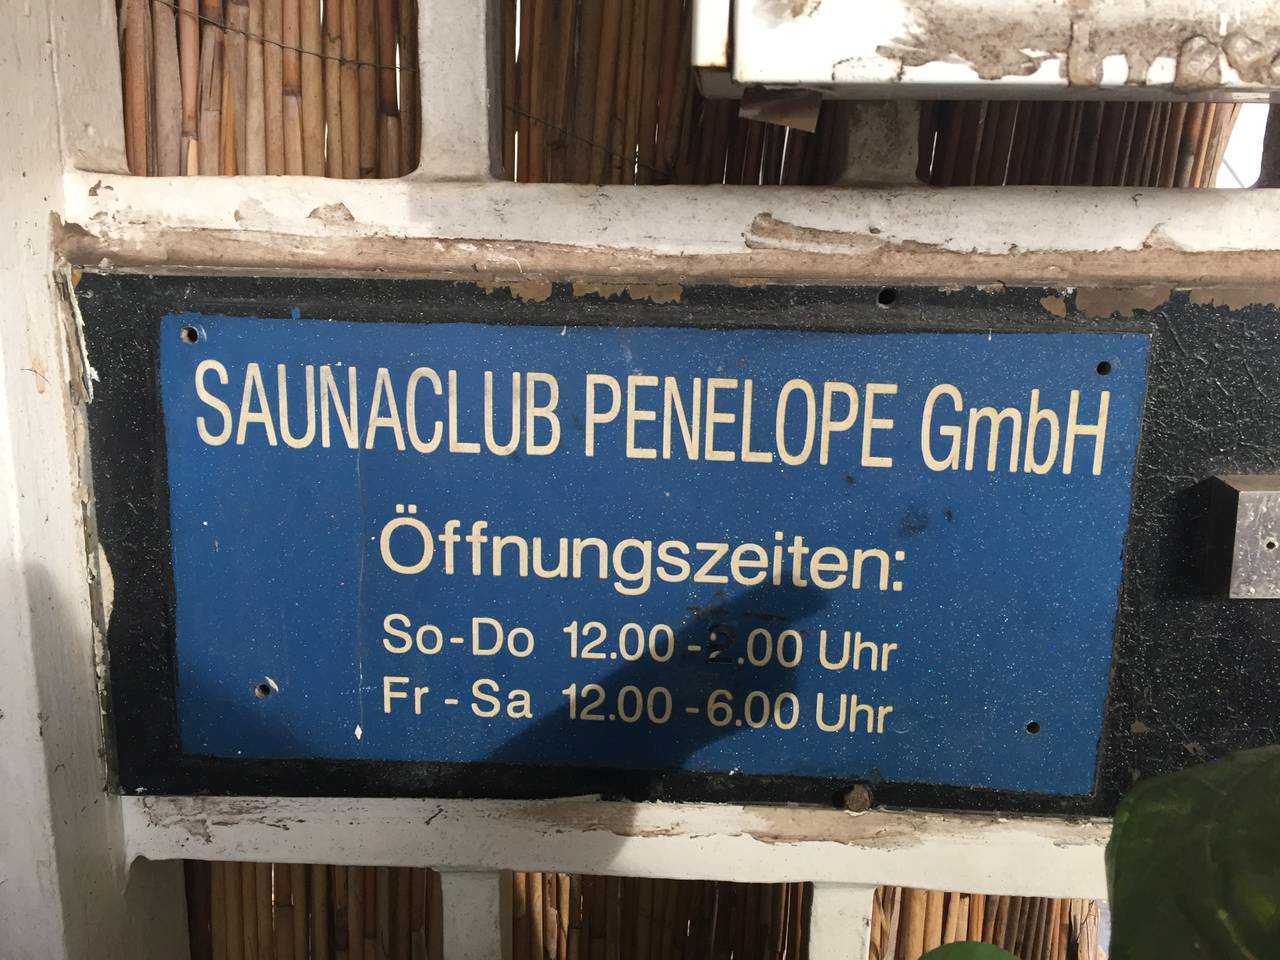 Sauna club in essen